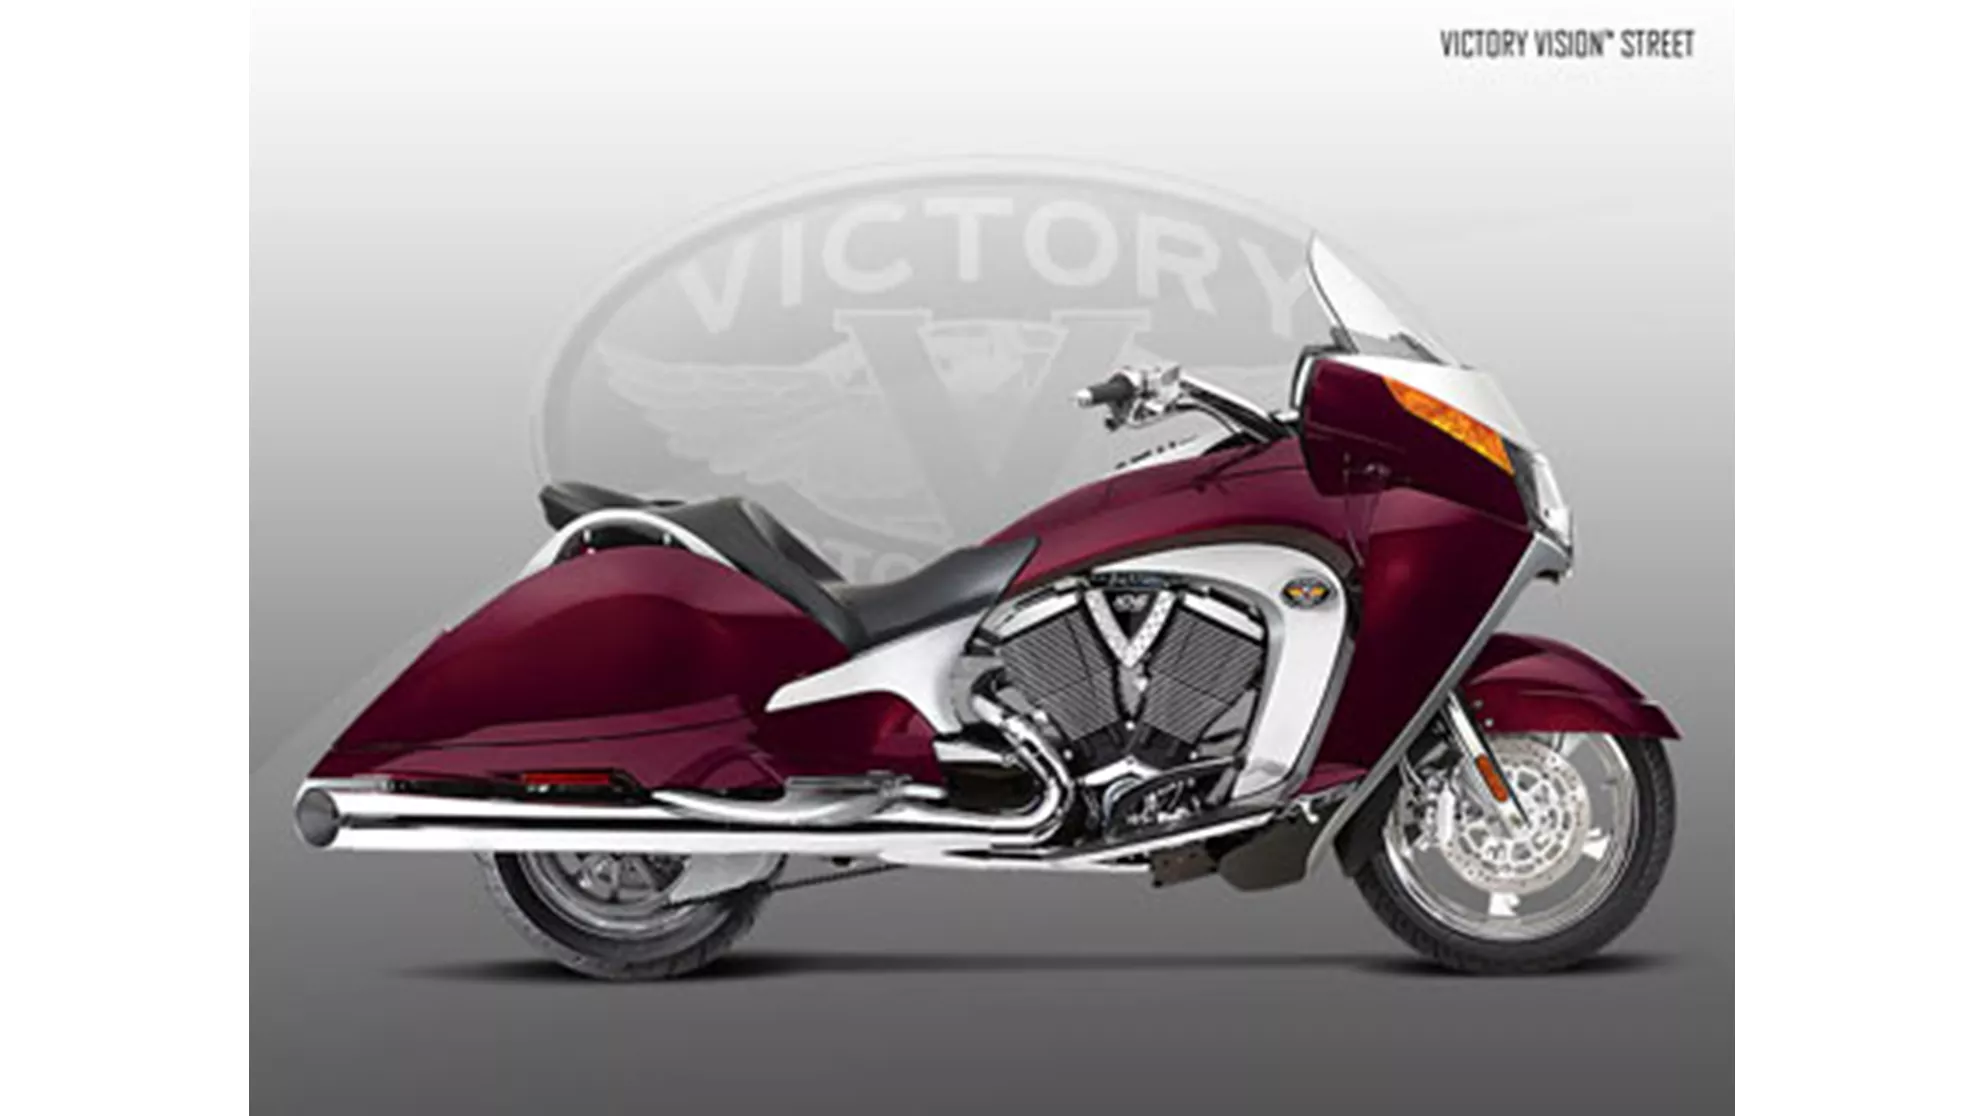 Victory Vision Street - Slika 1